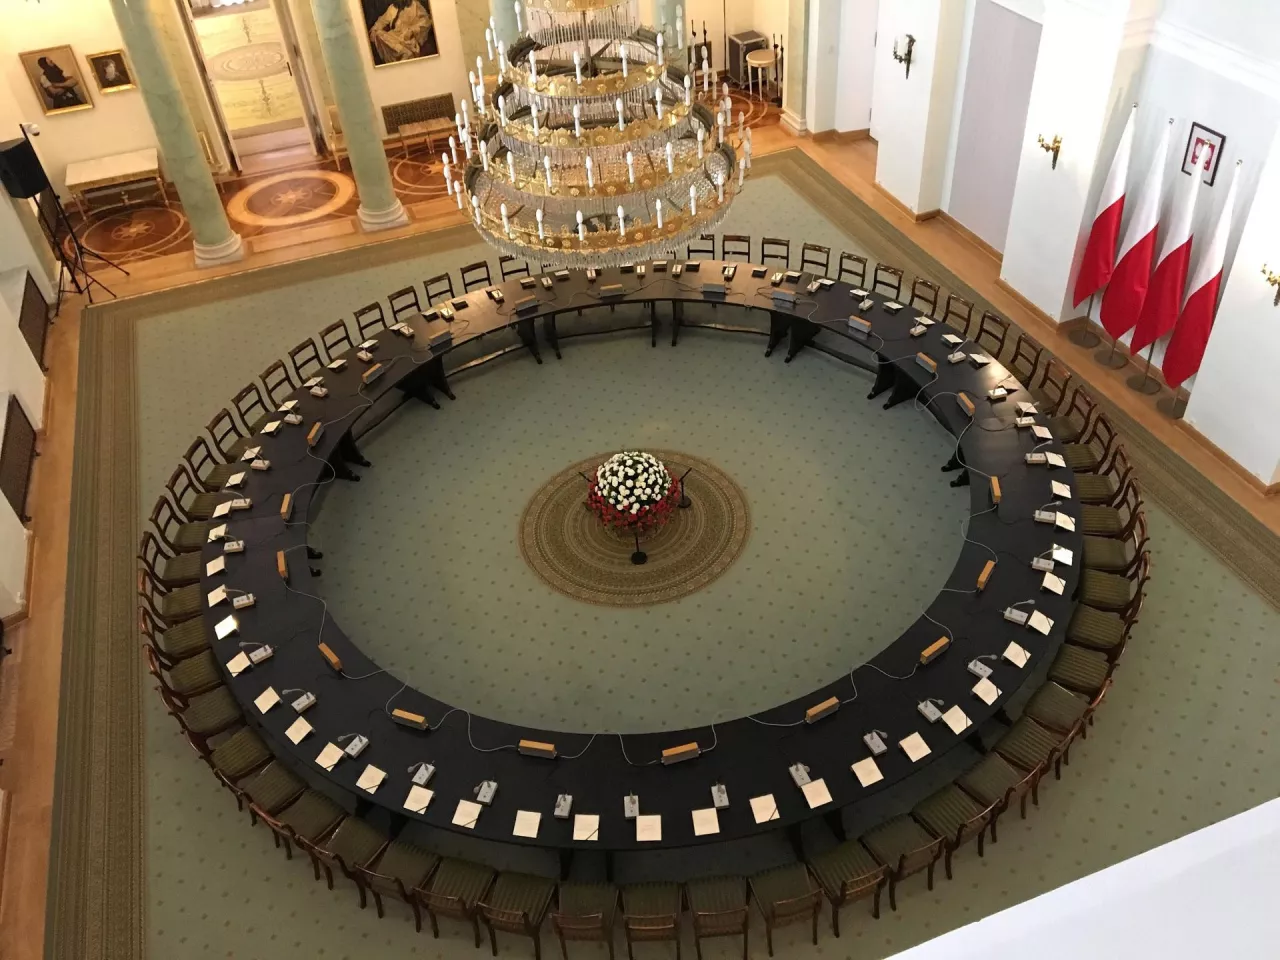 Na zdj. słynny Okrągły Stół przechowywany w Pałacu Prezydenckim (fot. Dawid Drabik, Wikimedia Commons, na lic. CC BY-SA-3.0)